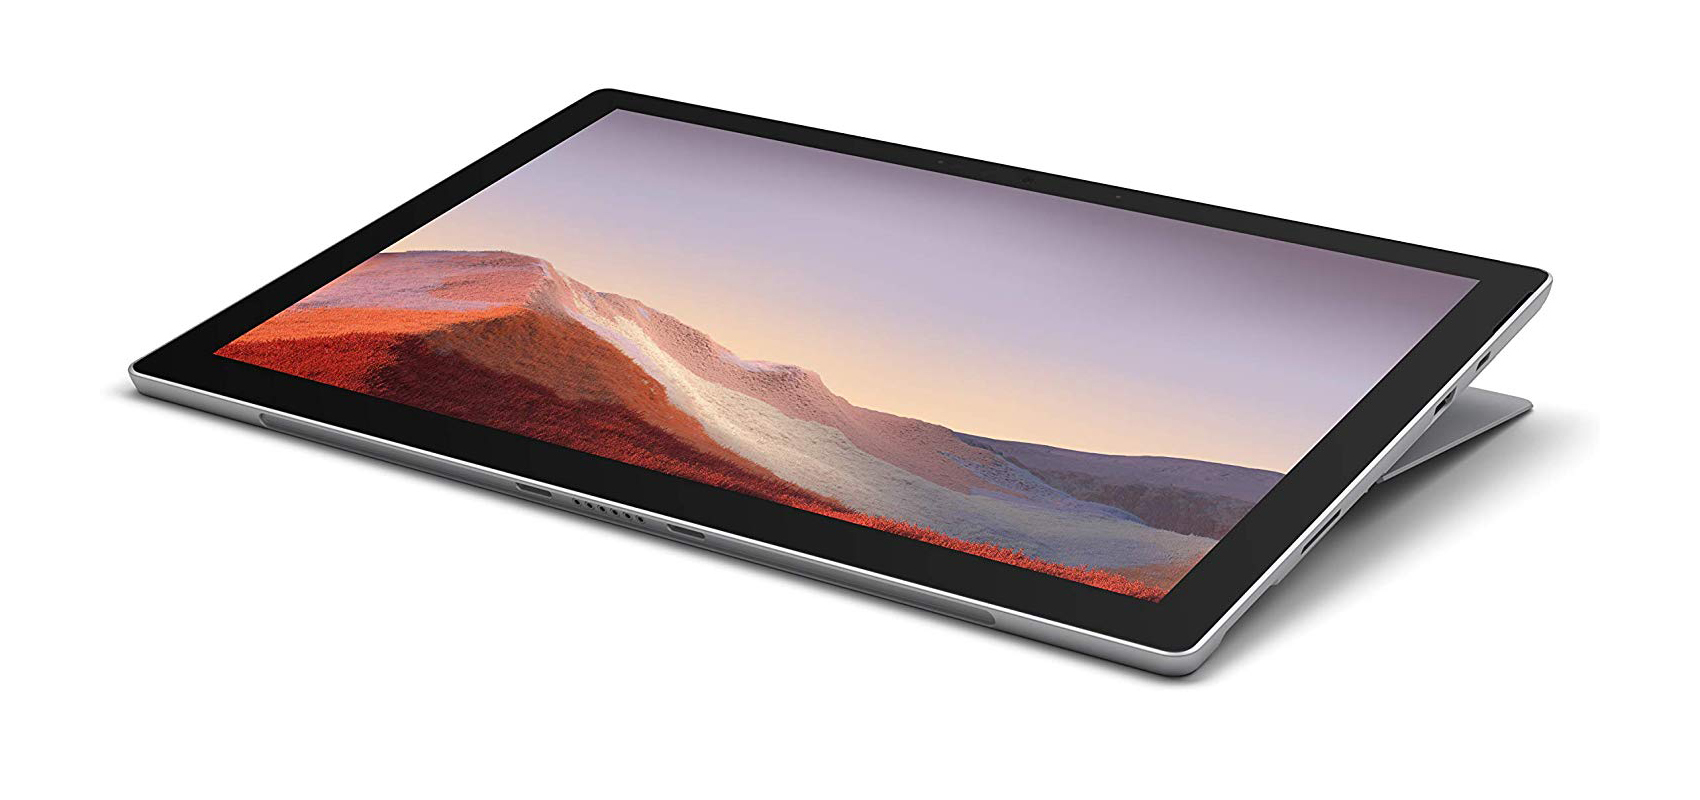 جهاز Microsoft Surface Pro 7 بالمعالج i7-1065G7/ ذاكرة الوصول العشوائي 16 جيجابايت/محرك أقراص صلبة من النوع SSD سعة 1 تيرابايت/بلاتيني + غطاء أسود